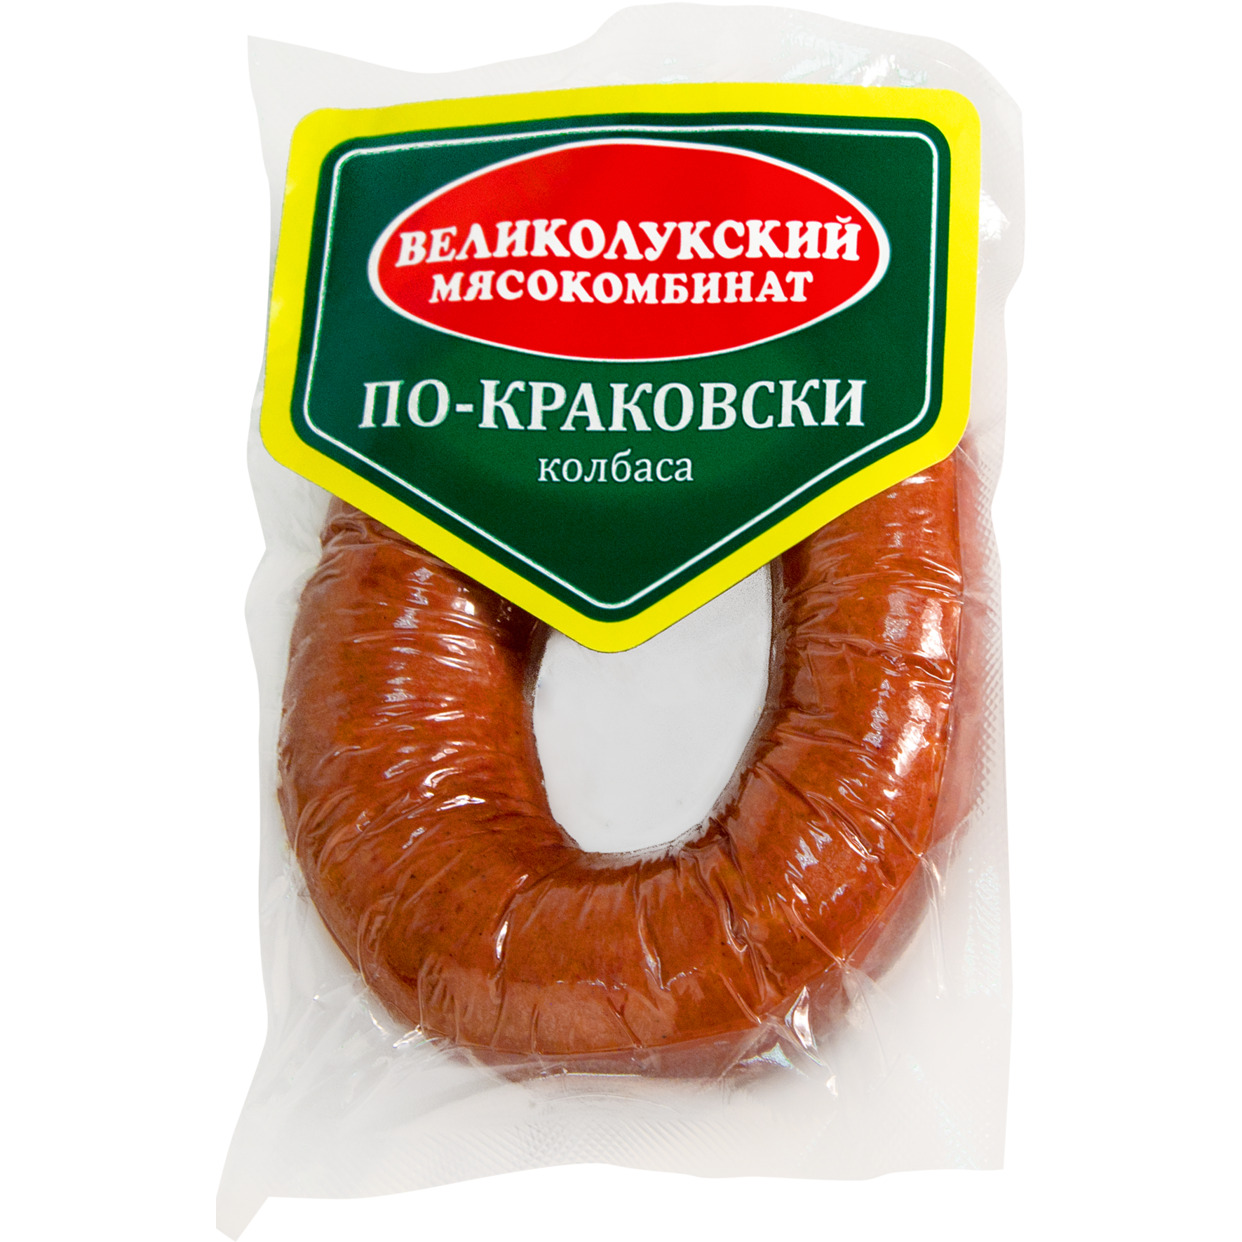 Мясной продукт категории В.Колбасное изделие п/к.Колбаса 